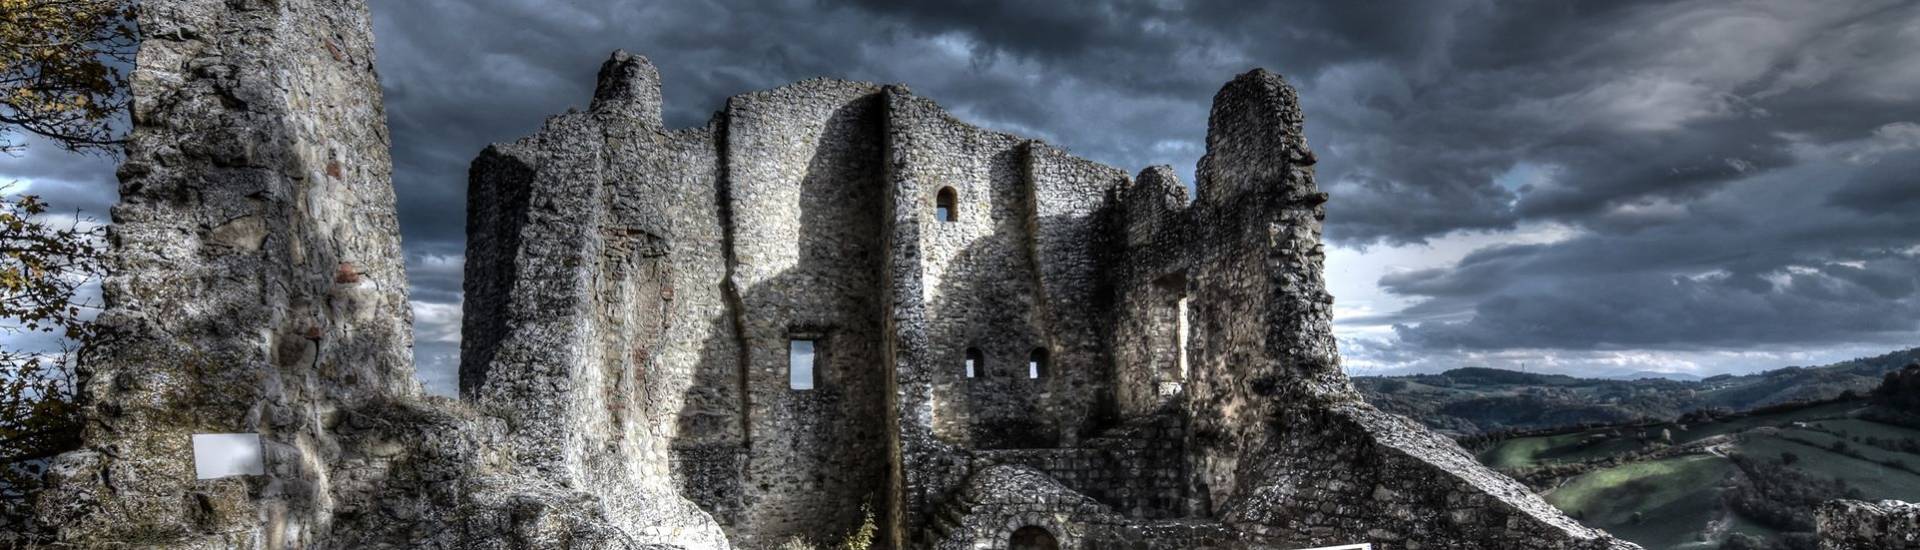 Castello di Canossa - Rovine del Castello di Canossa foto di: |Emanuela Rabotti| - Associazione Culturale Matilde di Canossa